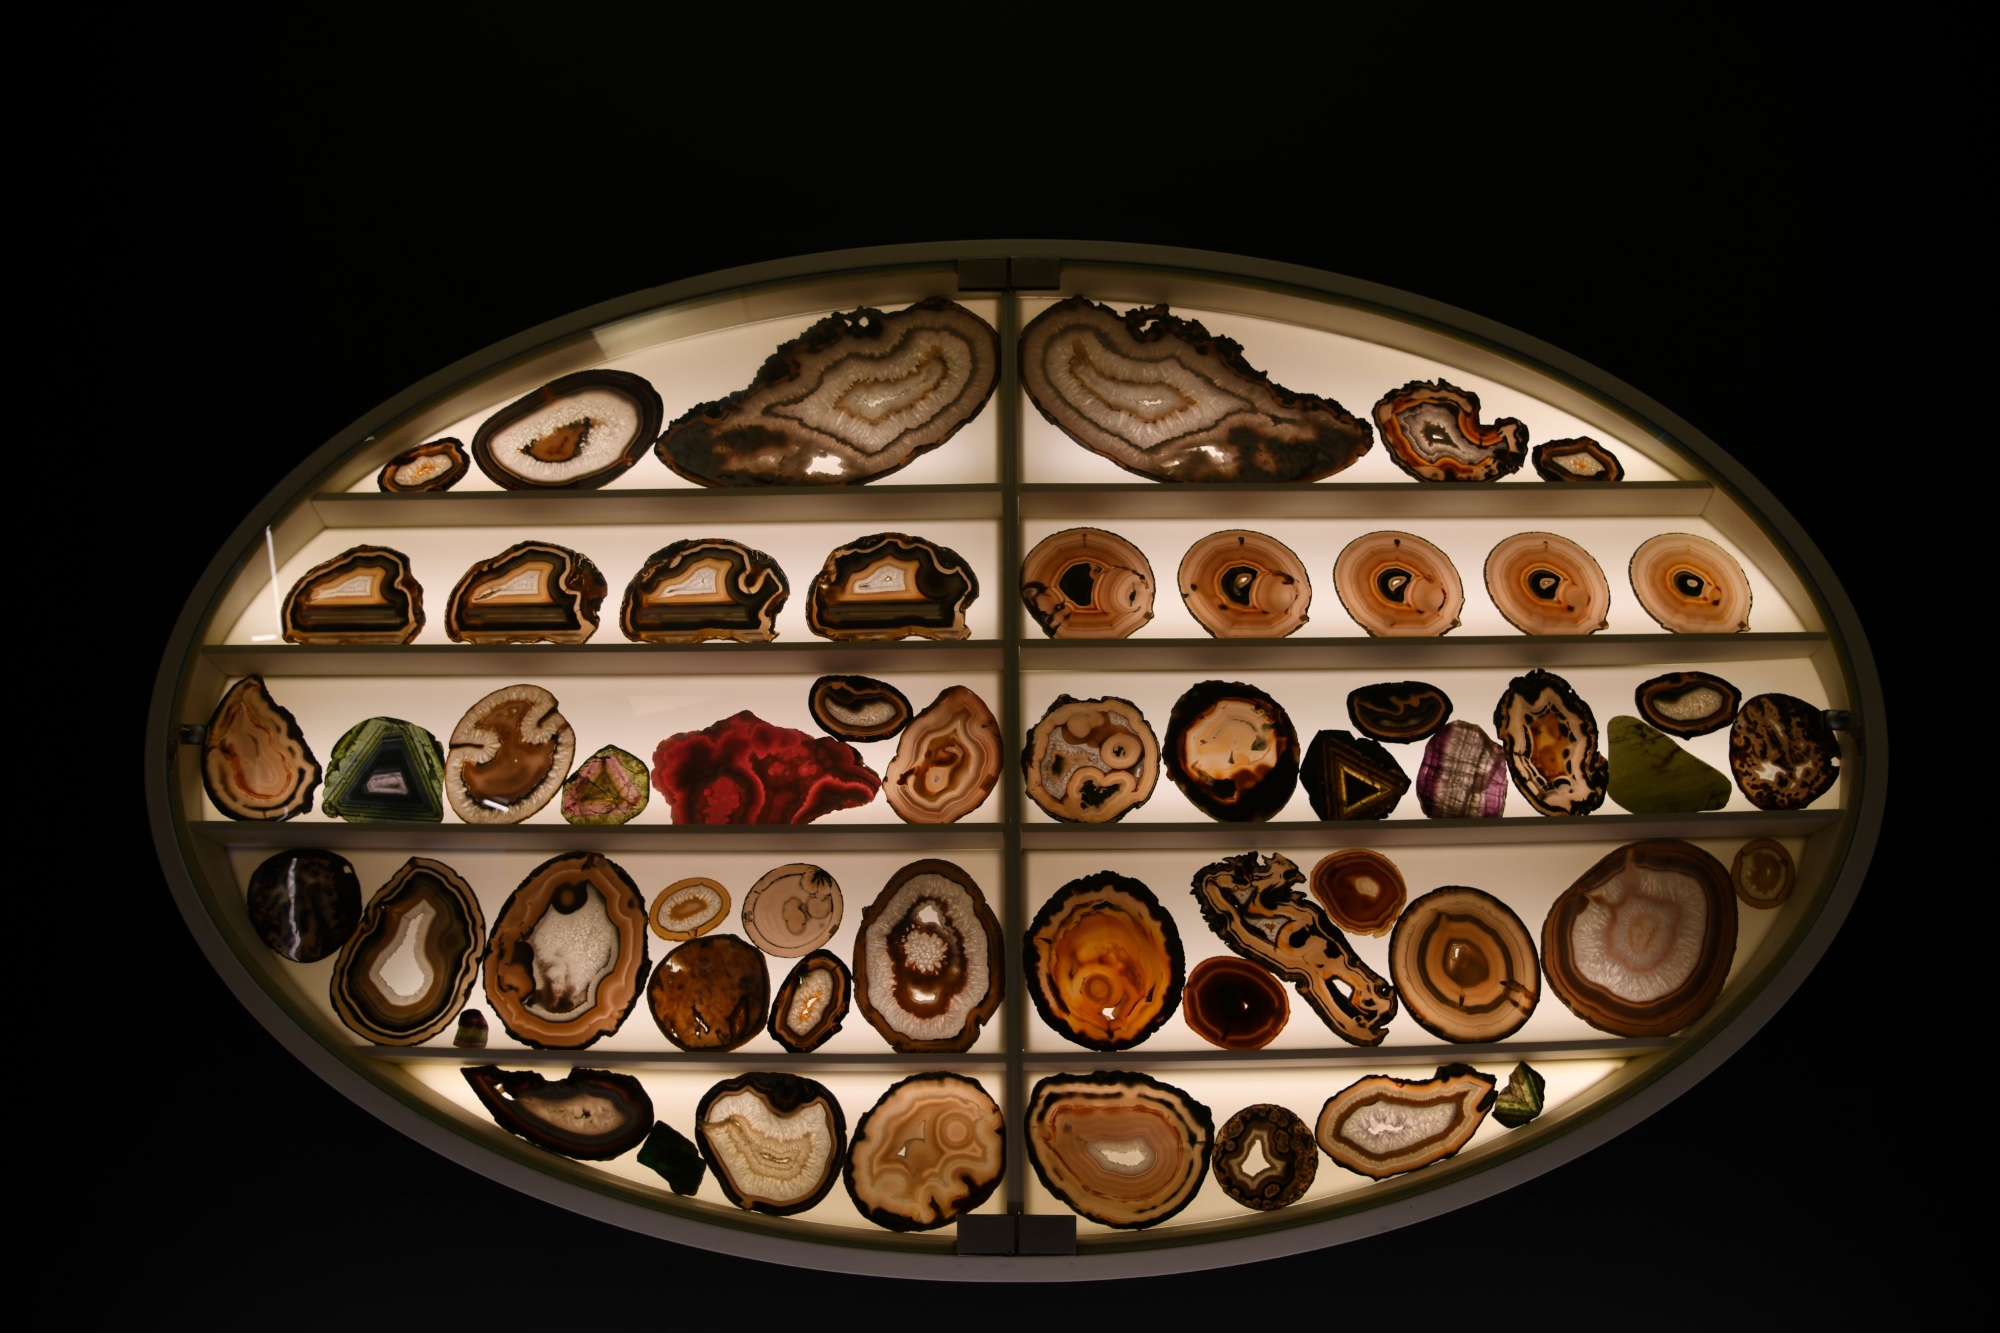 Museum La Specola – Mineralogy